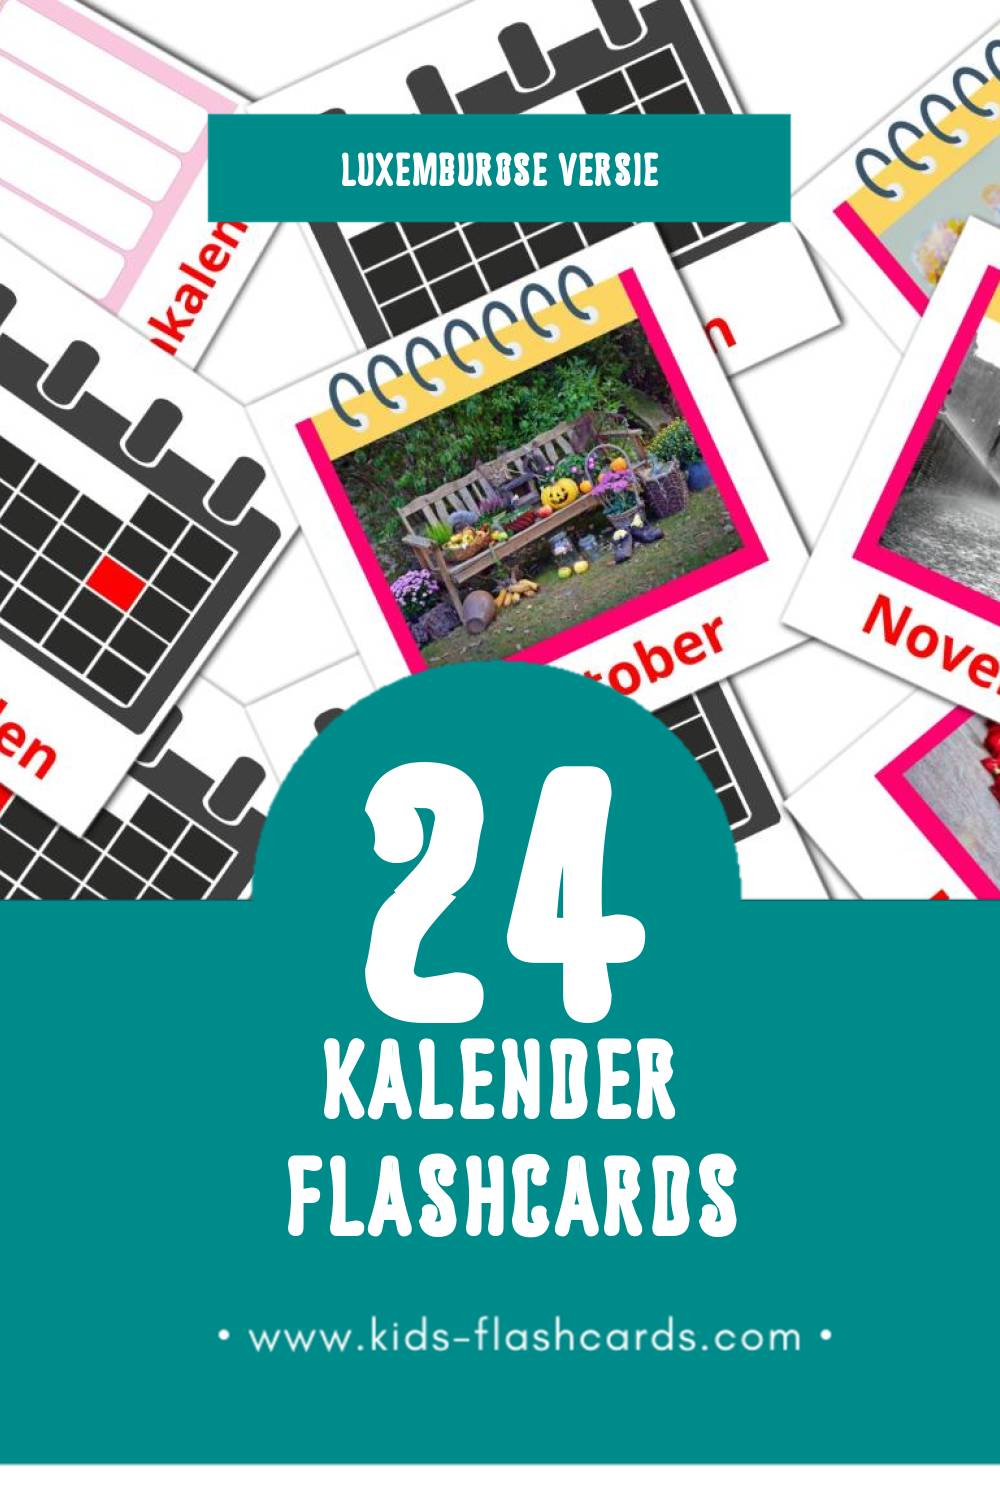 Visuele Kalenner Flashcards voor Kleuters (24 kaarten in het Luxemburgs)